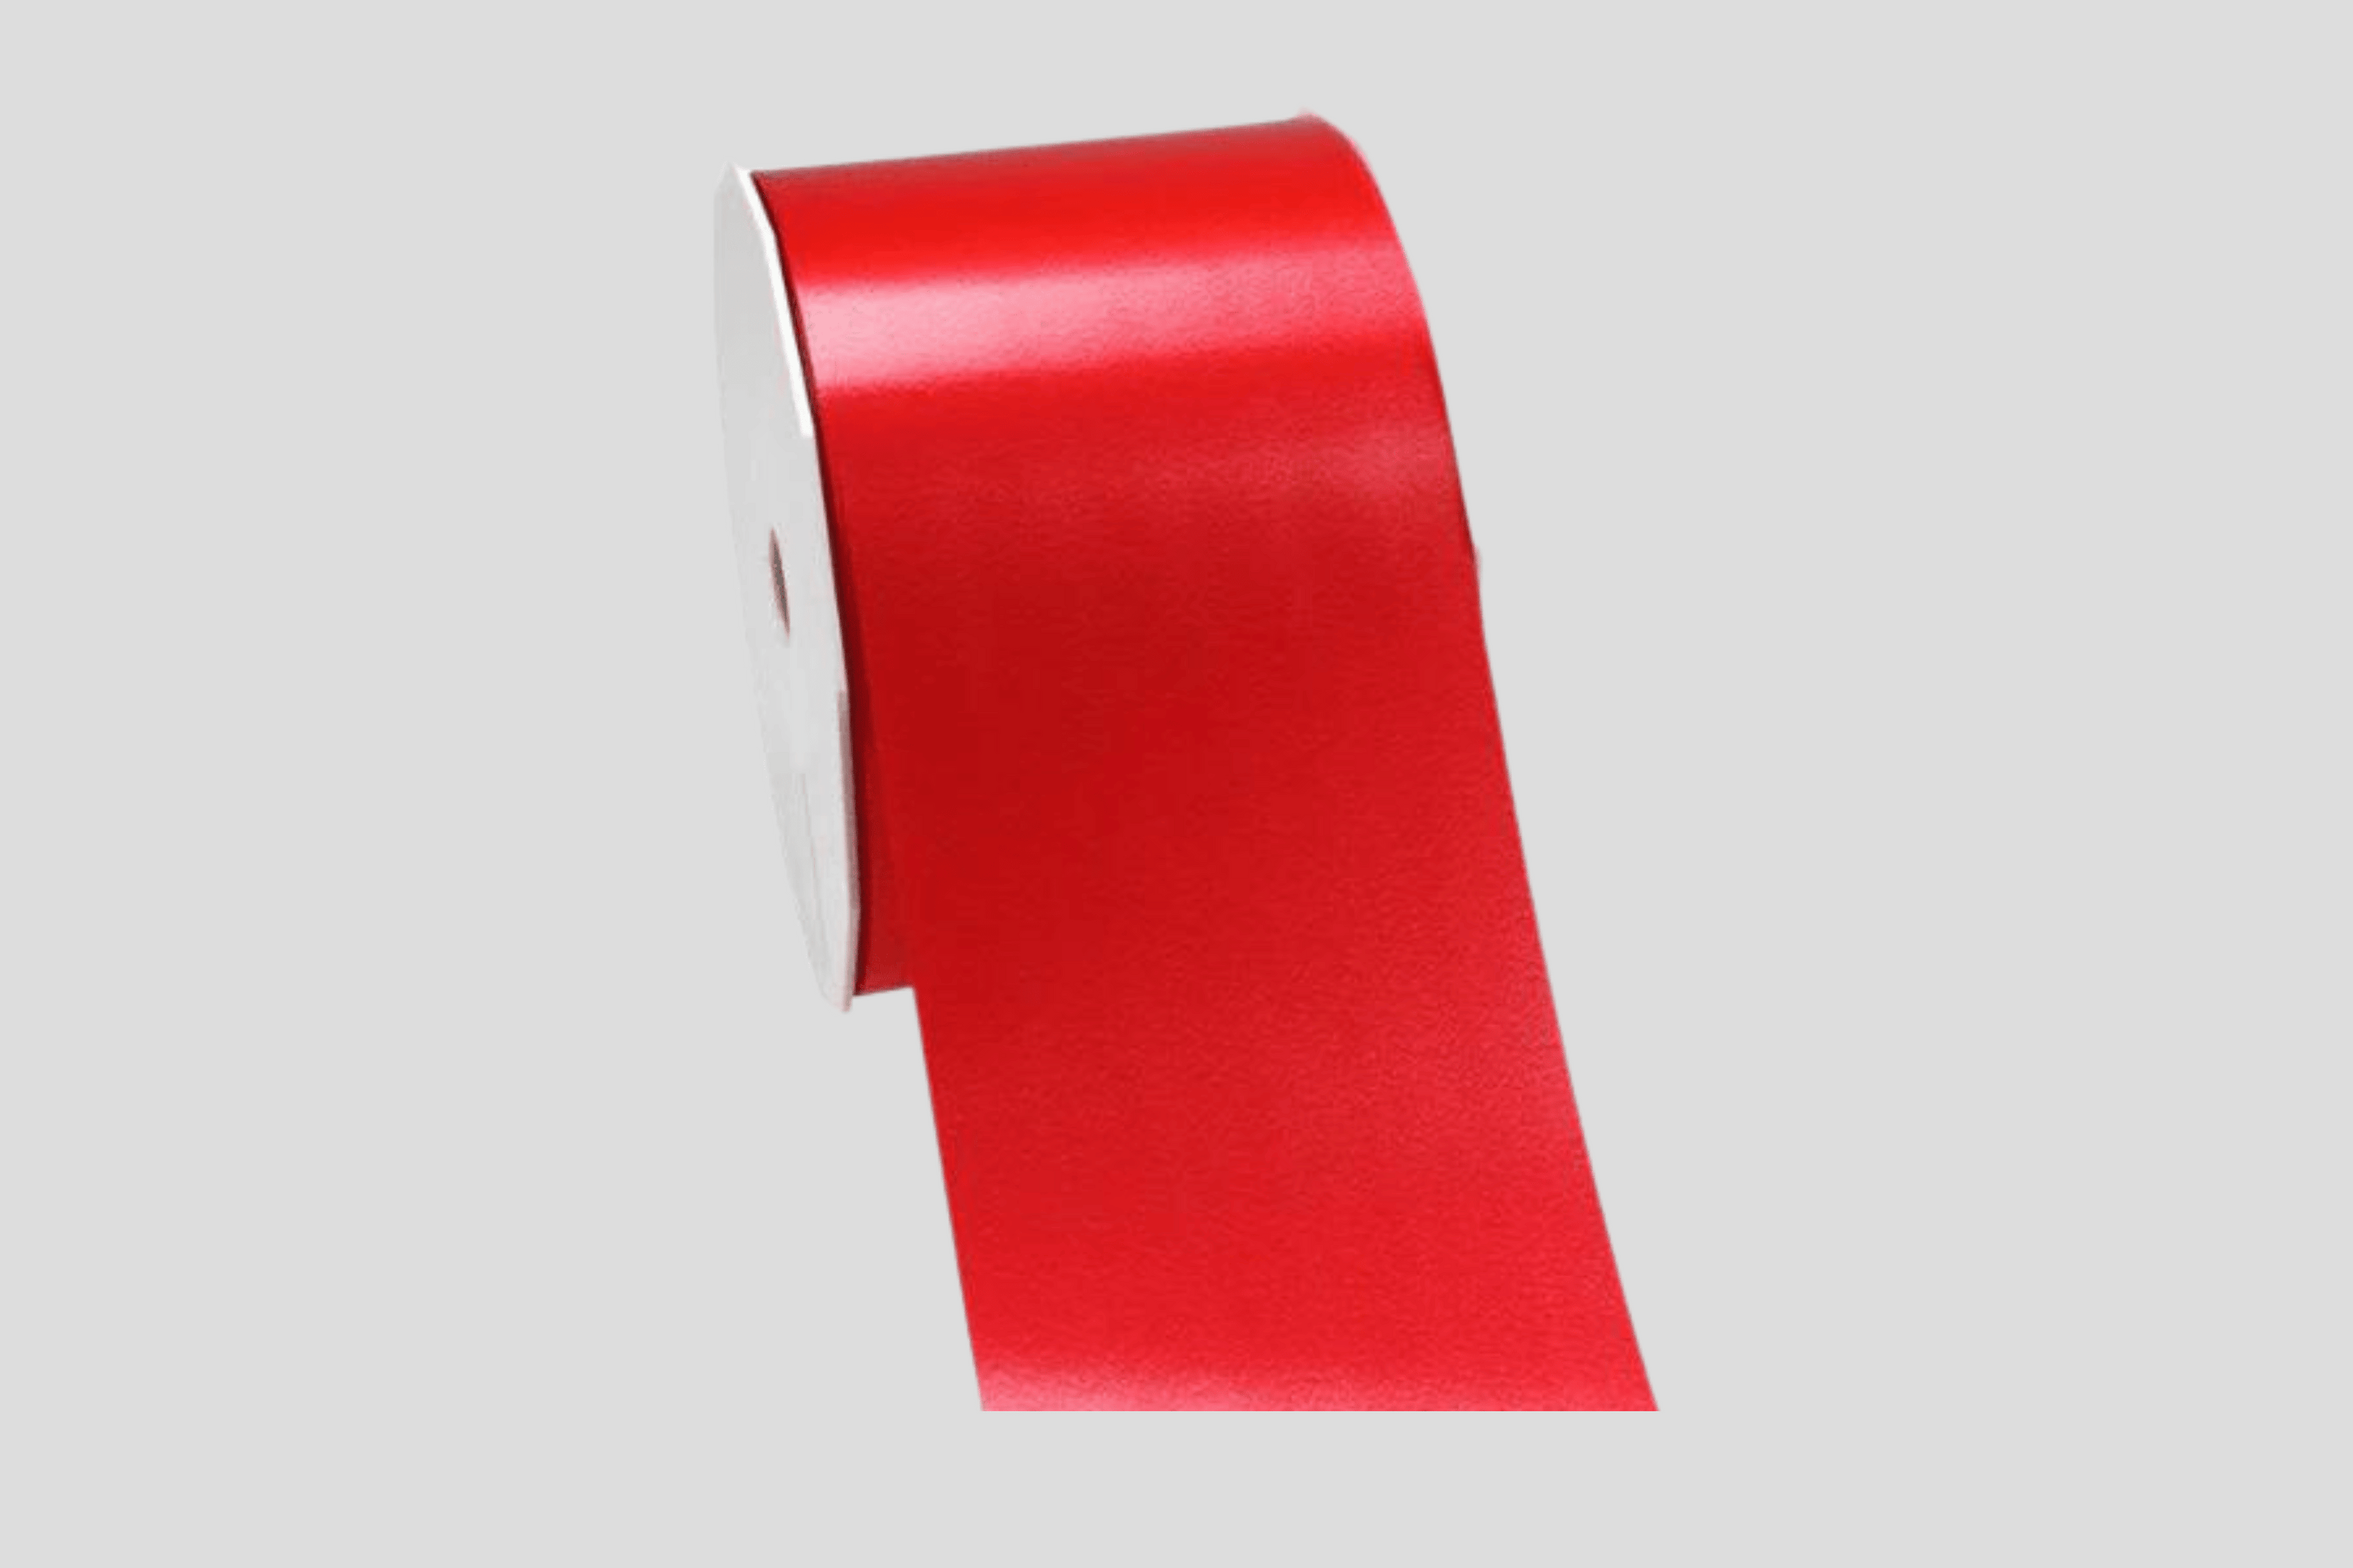 En rull med rødt bånd på en hvit bakgrunn.